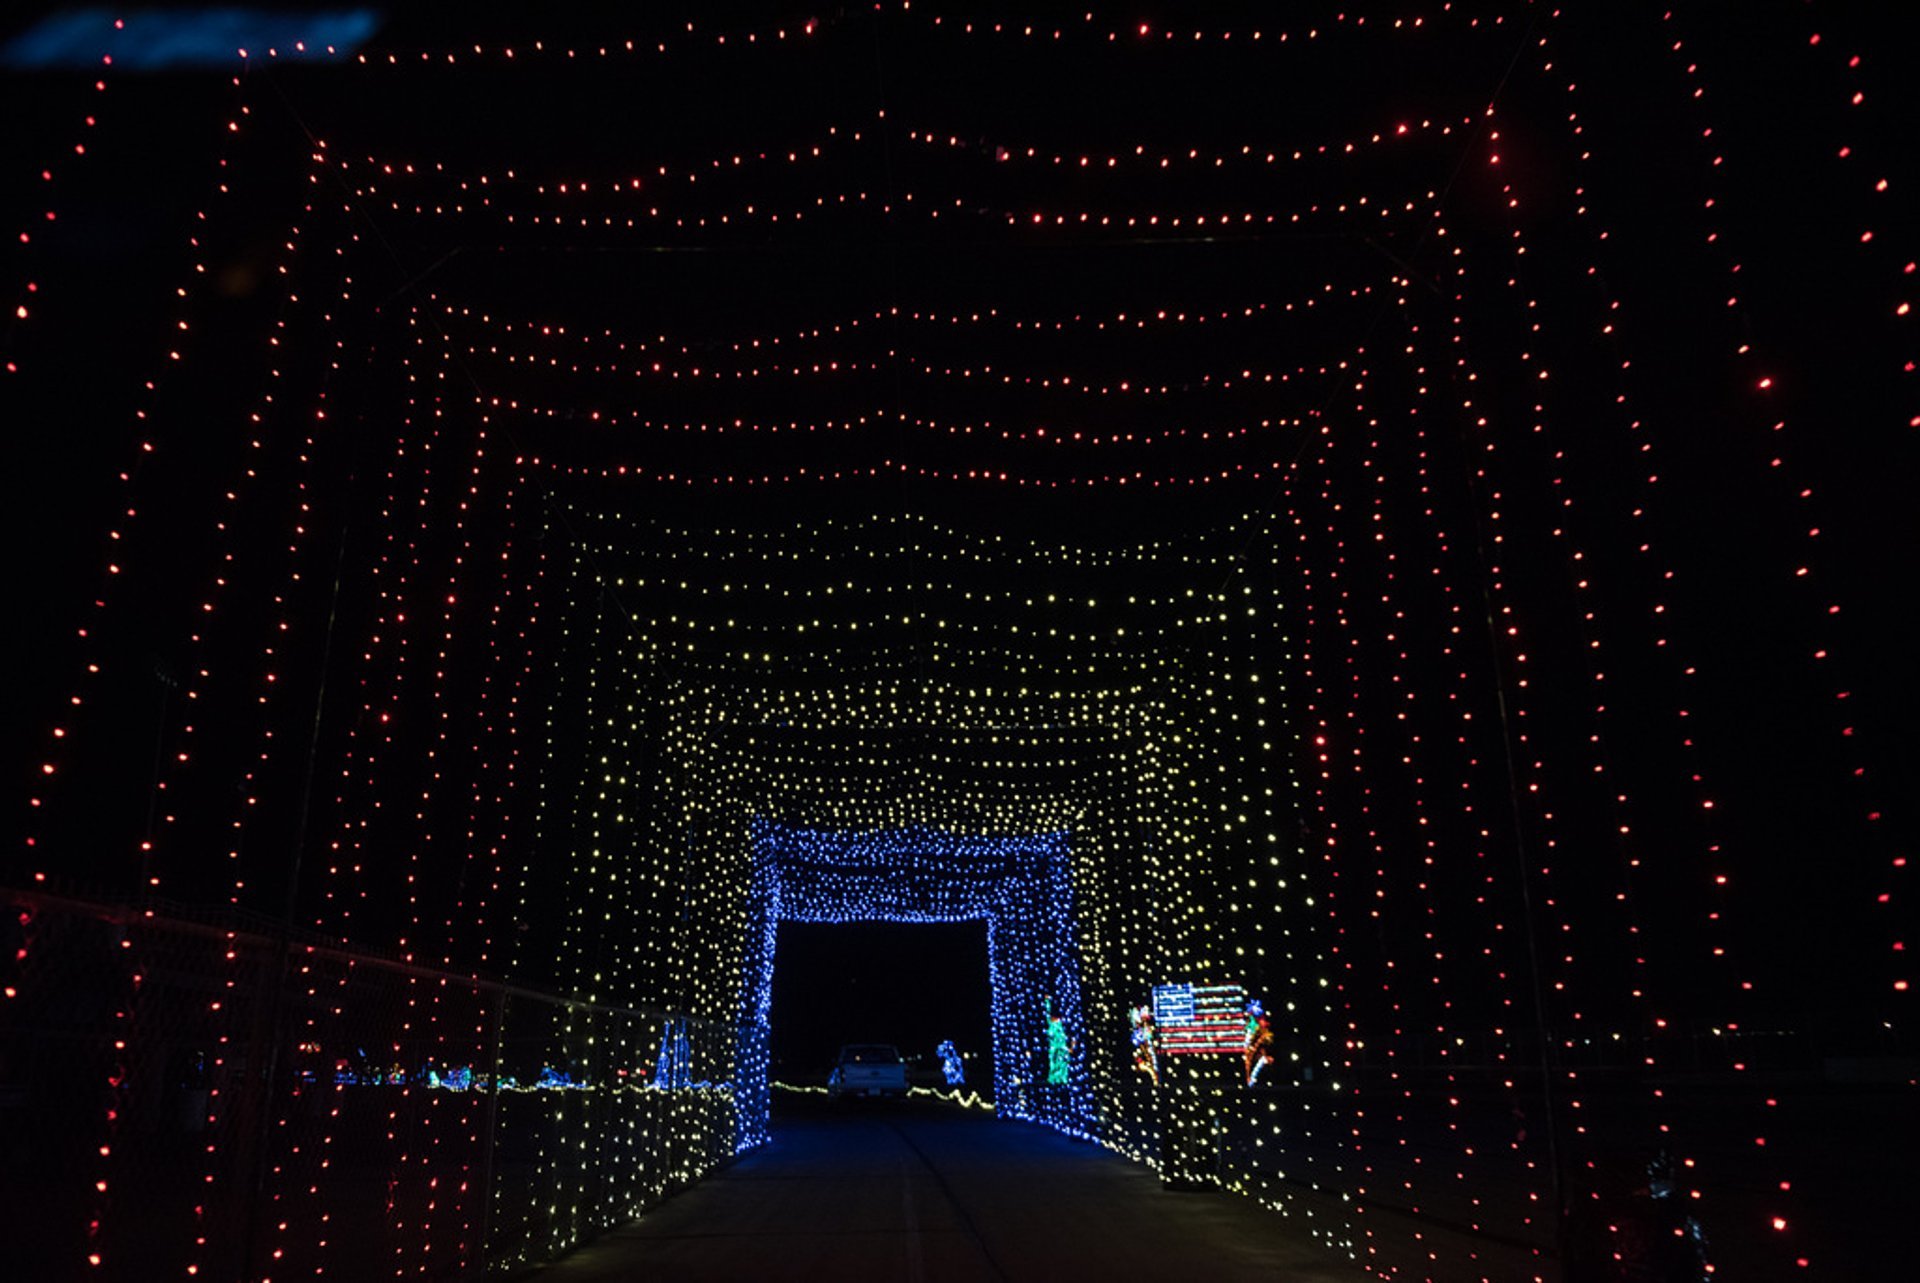 Guida attraverso parchi di luce di Natale